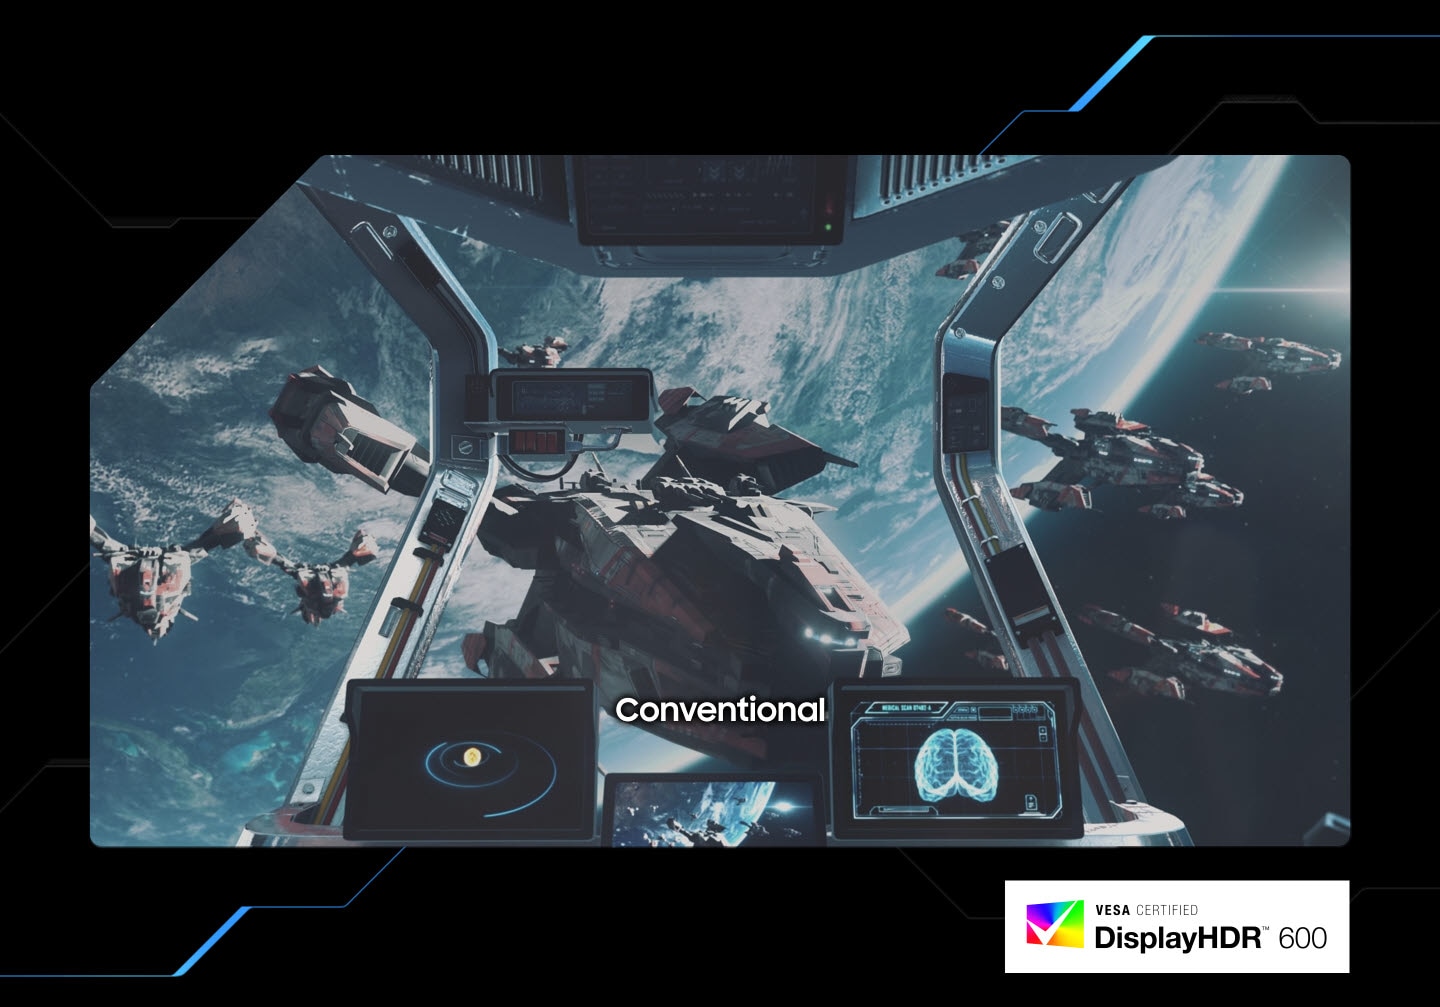 На обычном экране виден космический корабль. При переключении на VESA Display HDR 600 экран становится более четким и выявляет больше деталей вокруг темных участков космического корабля. В правом нижнем углу экрана находится логотип VESA Certified DisplayHDR 600.